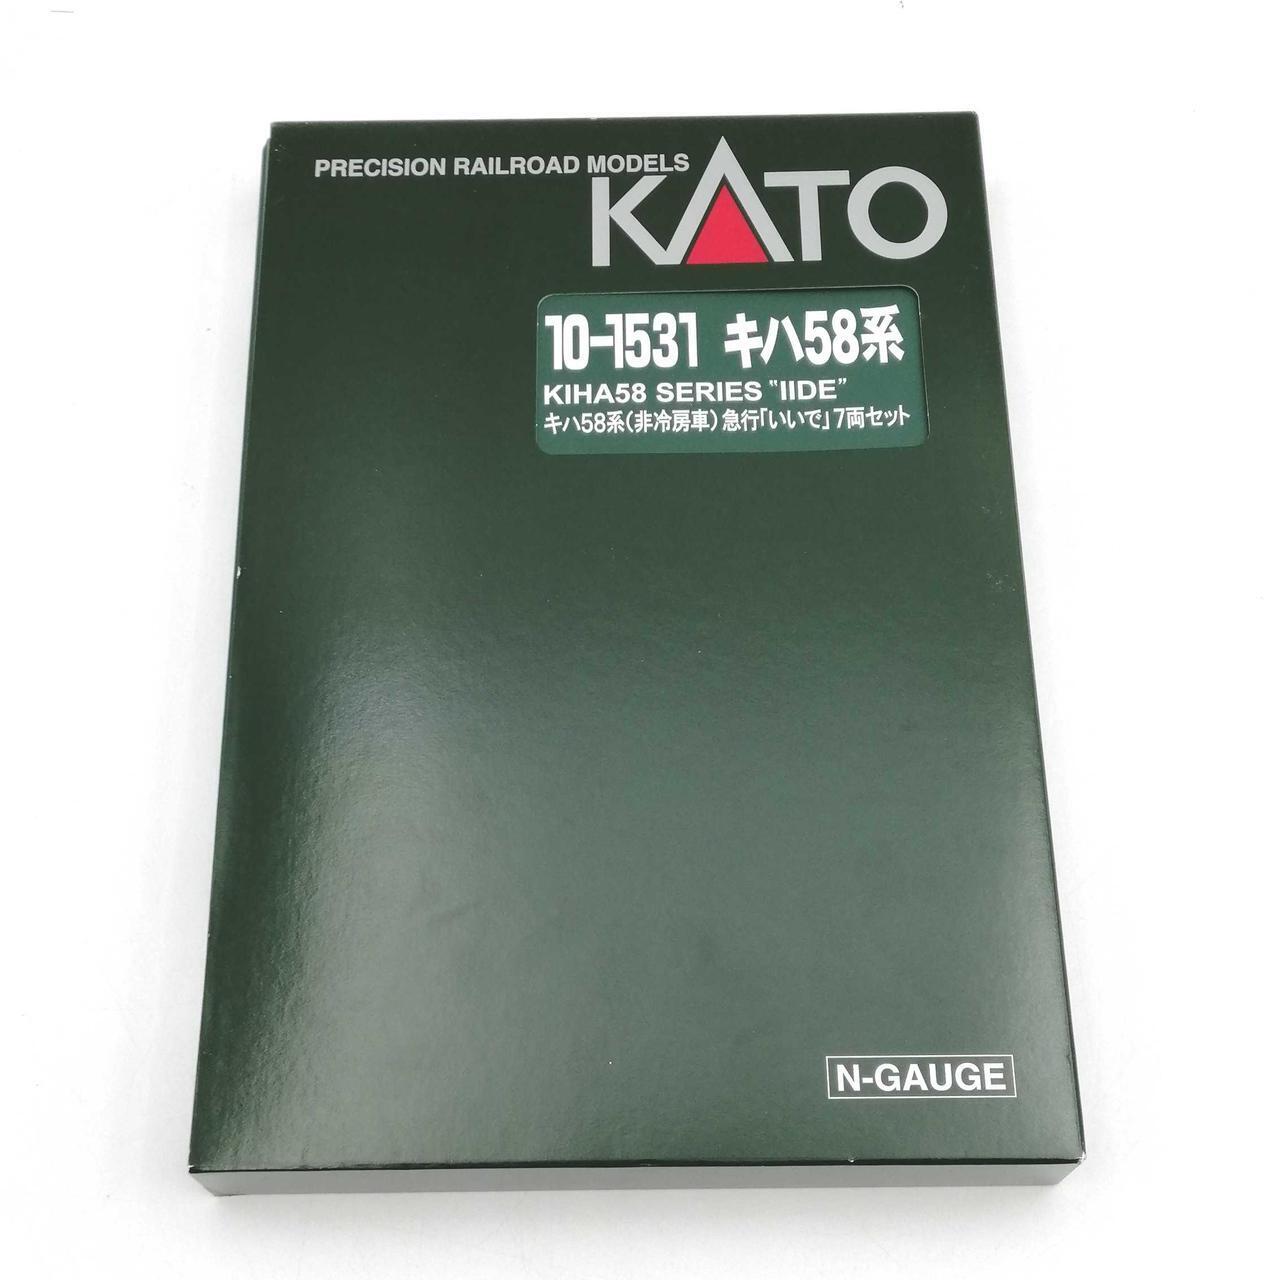 Kato 10-1531 Kiha 58 Series